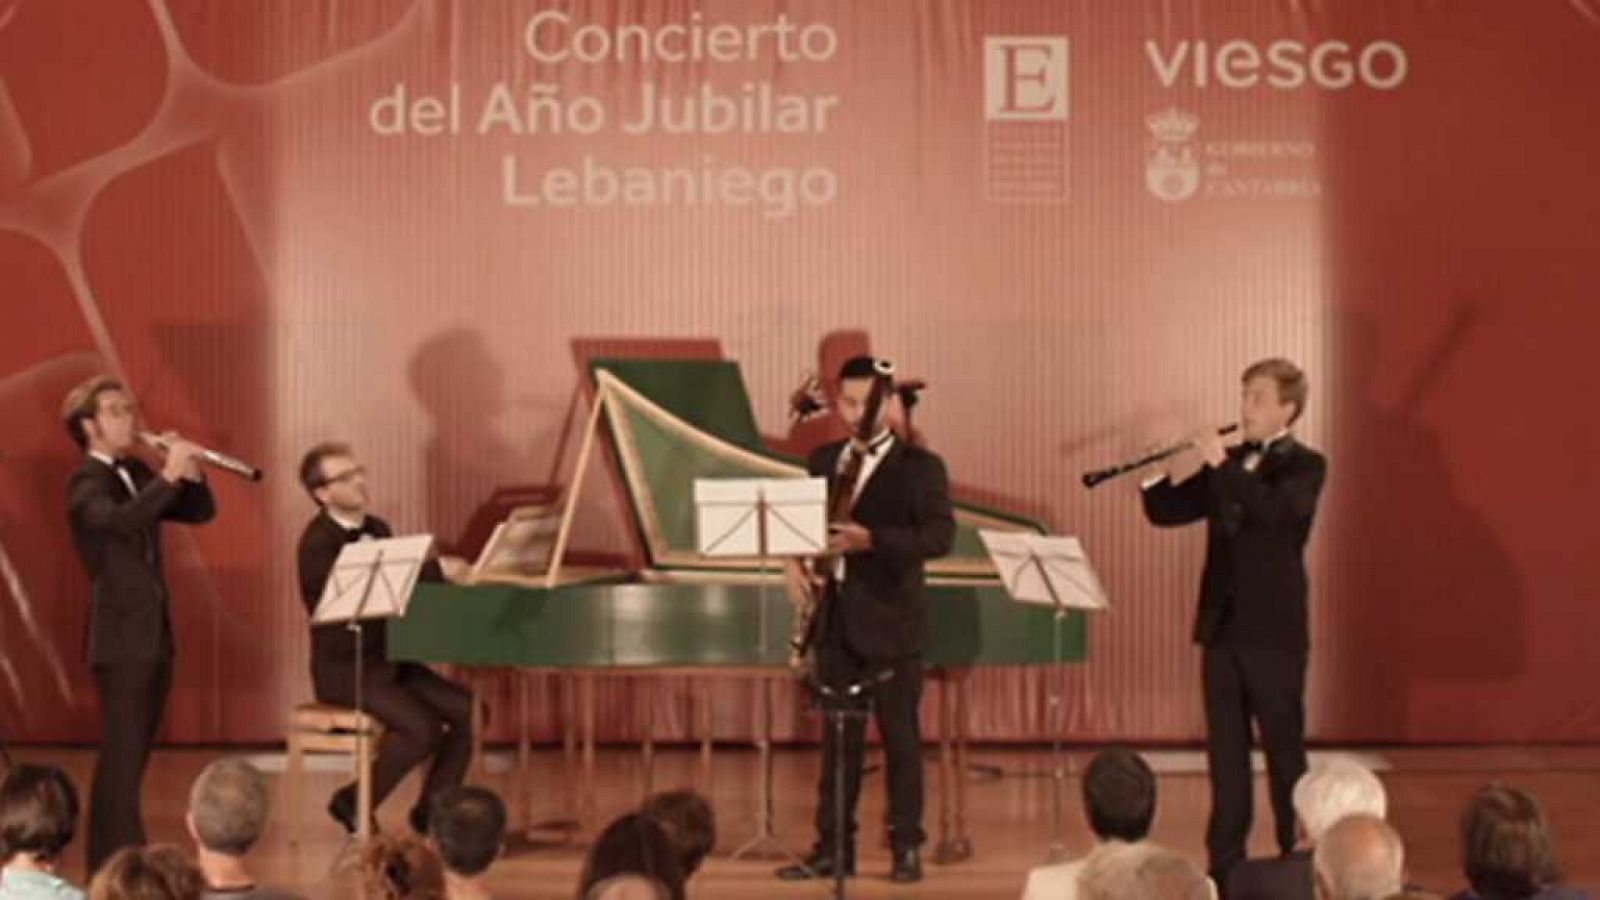 Los conciertos de La 2 - Escuela de Música Reina Sofía (Año Jubilar Lebaniego, Potes)